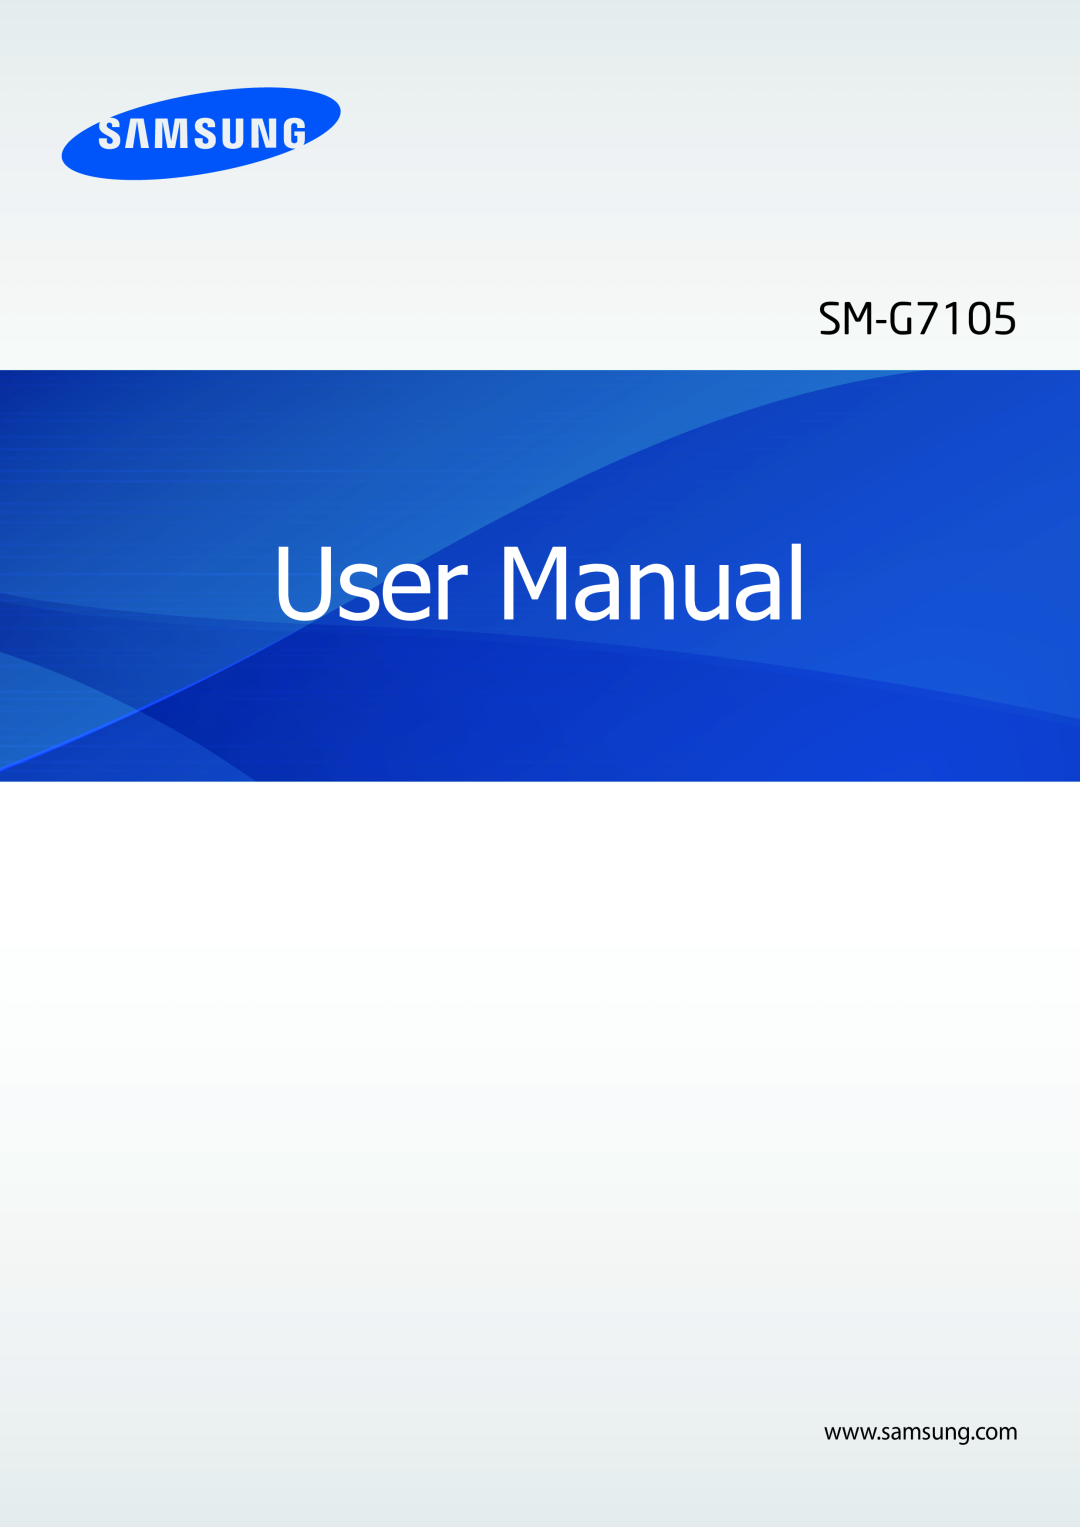 Samsung SM-G7105ZWAATO, SM-G7105ZKAATO, SM-G7105ZKATUR, SM-G7105ZKADBT, SM-G7105ZWATUR, SM-G7105ZWAEUR manual User Manual 